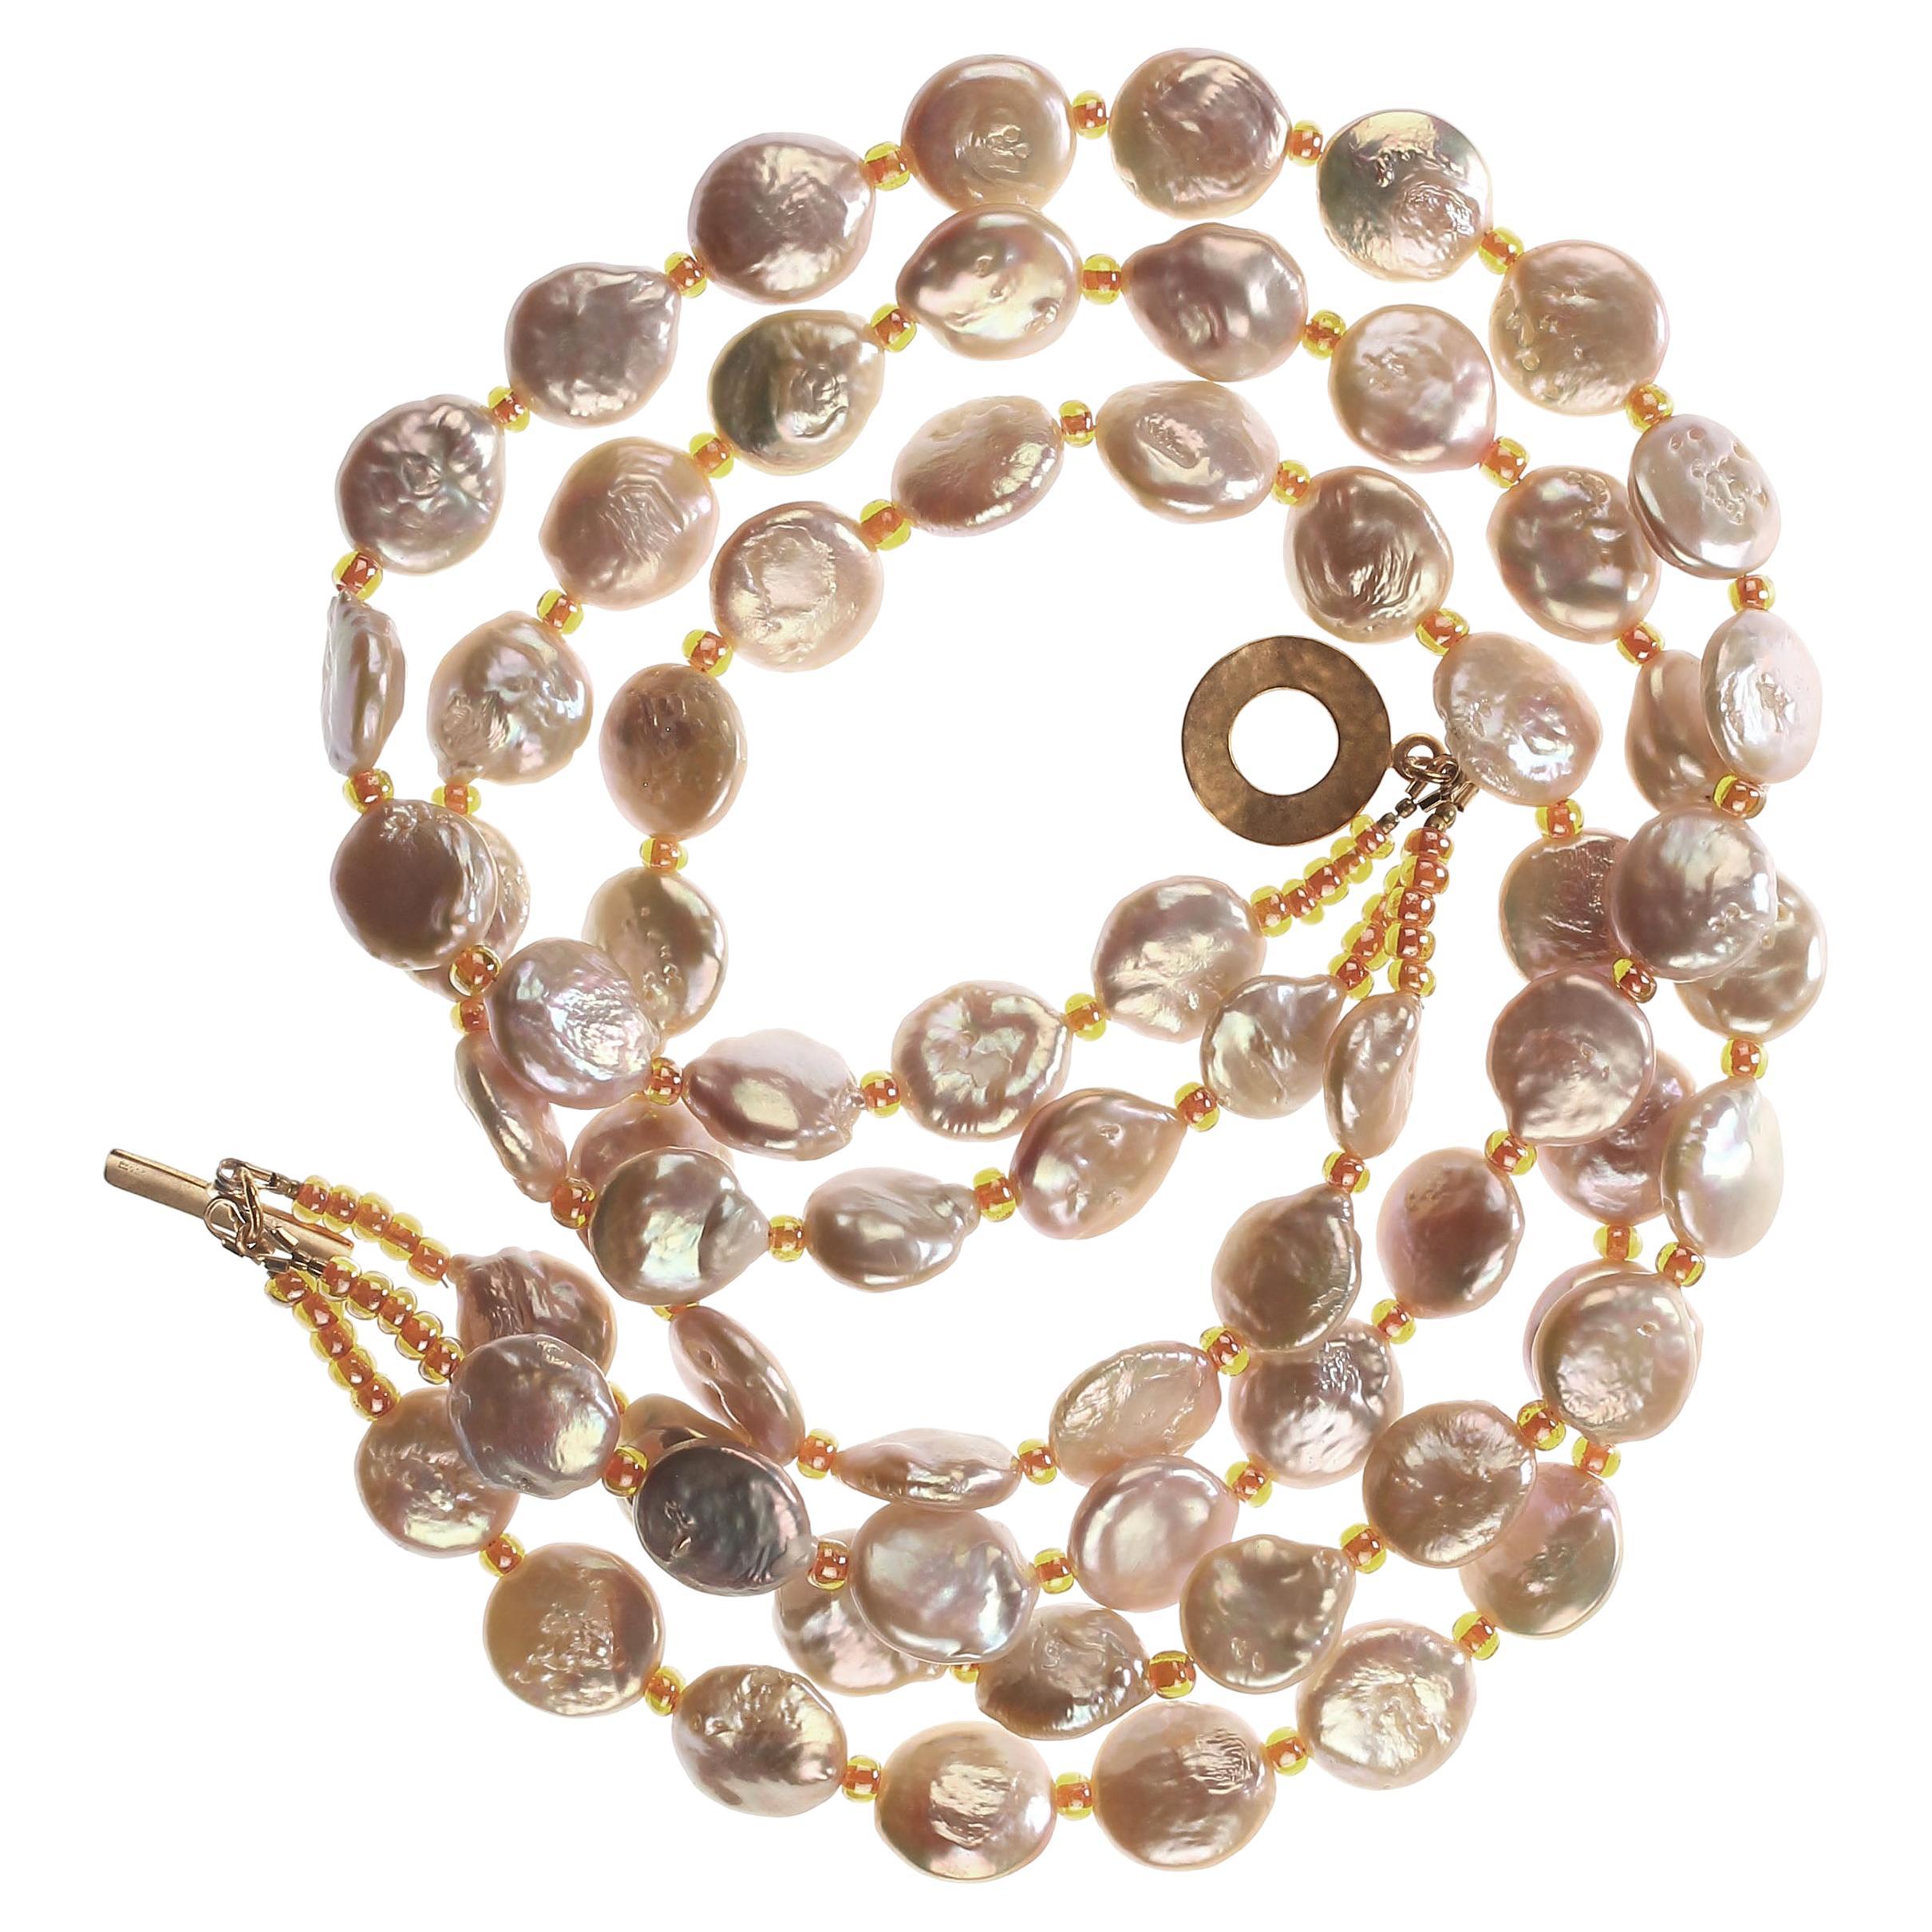 Possédez les perles que vous méritez

Collier unique à trois brins avec des perles de monnaie iridescentes rose pêche et des perles tchèques orange.   Ce collier parfait pour le printemps et l'été est composé de trois rangs de perles magnifiques à